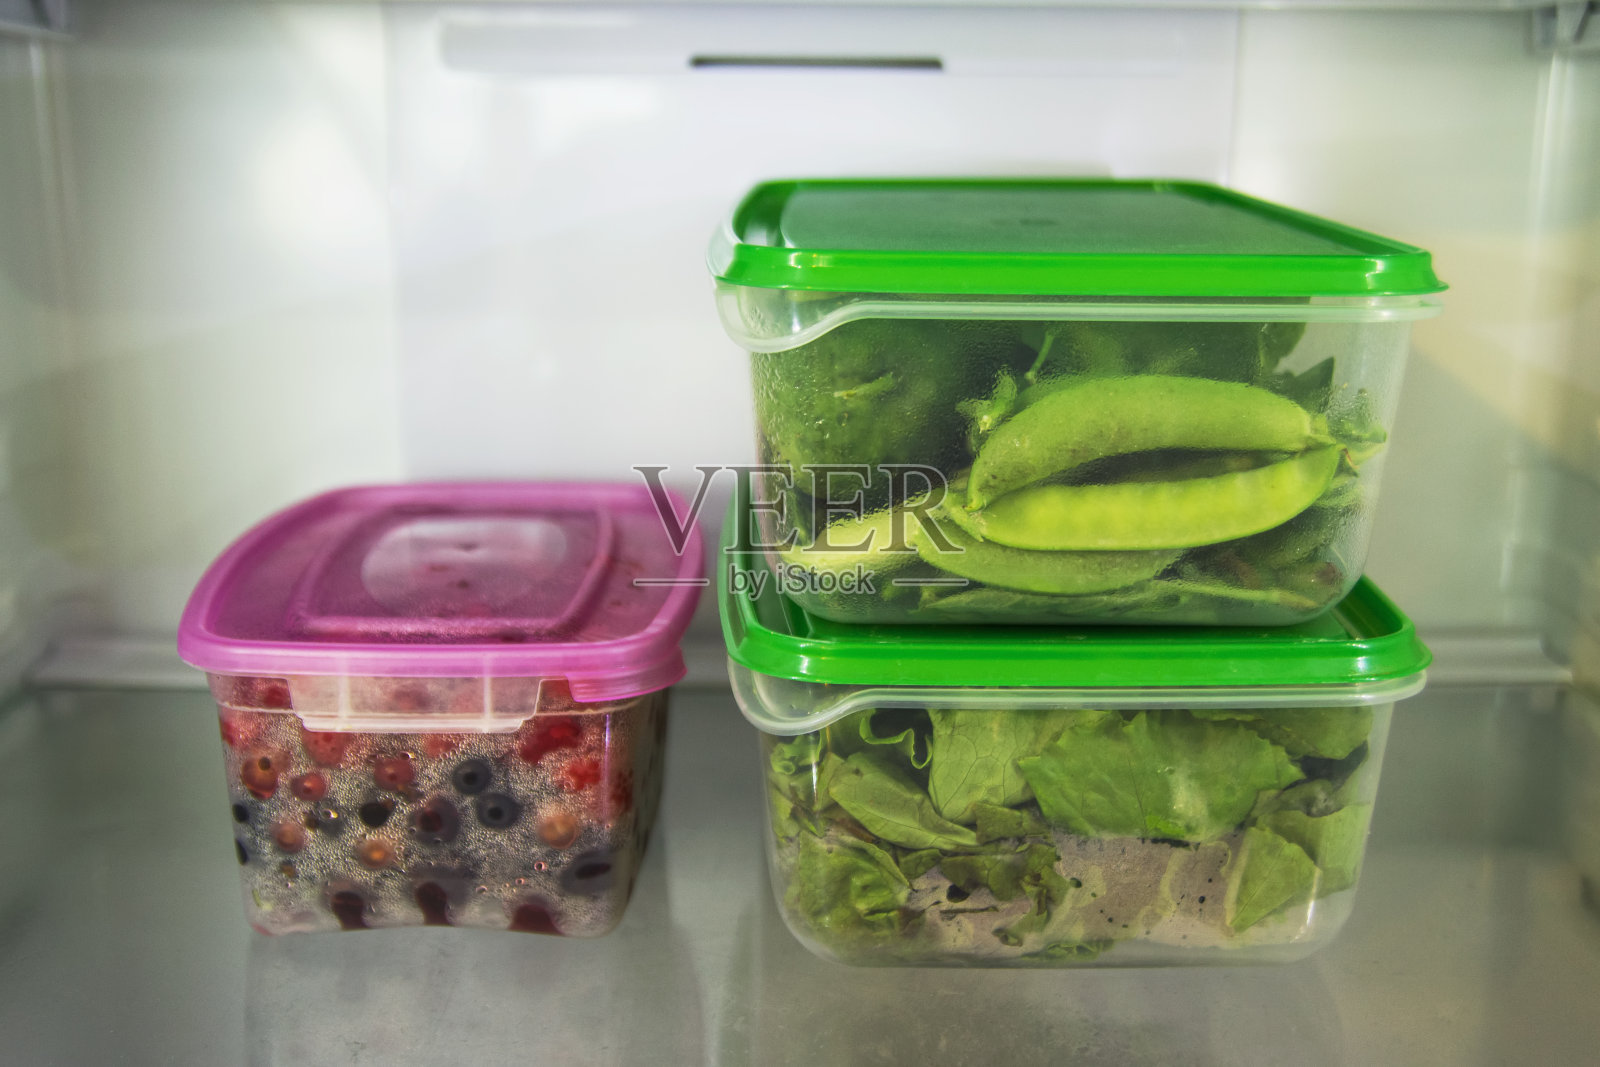 冰箱的架子上放着两个塑料食品容器，里面装着绿色蔬菜(沙拉、罗勒、莳萝、酢浆草、豌豆、黄瓜、胡椒)，另一个装着浆果(醋栗、覆盆子、醋栗)。照片摄影图片